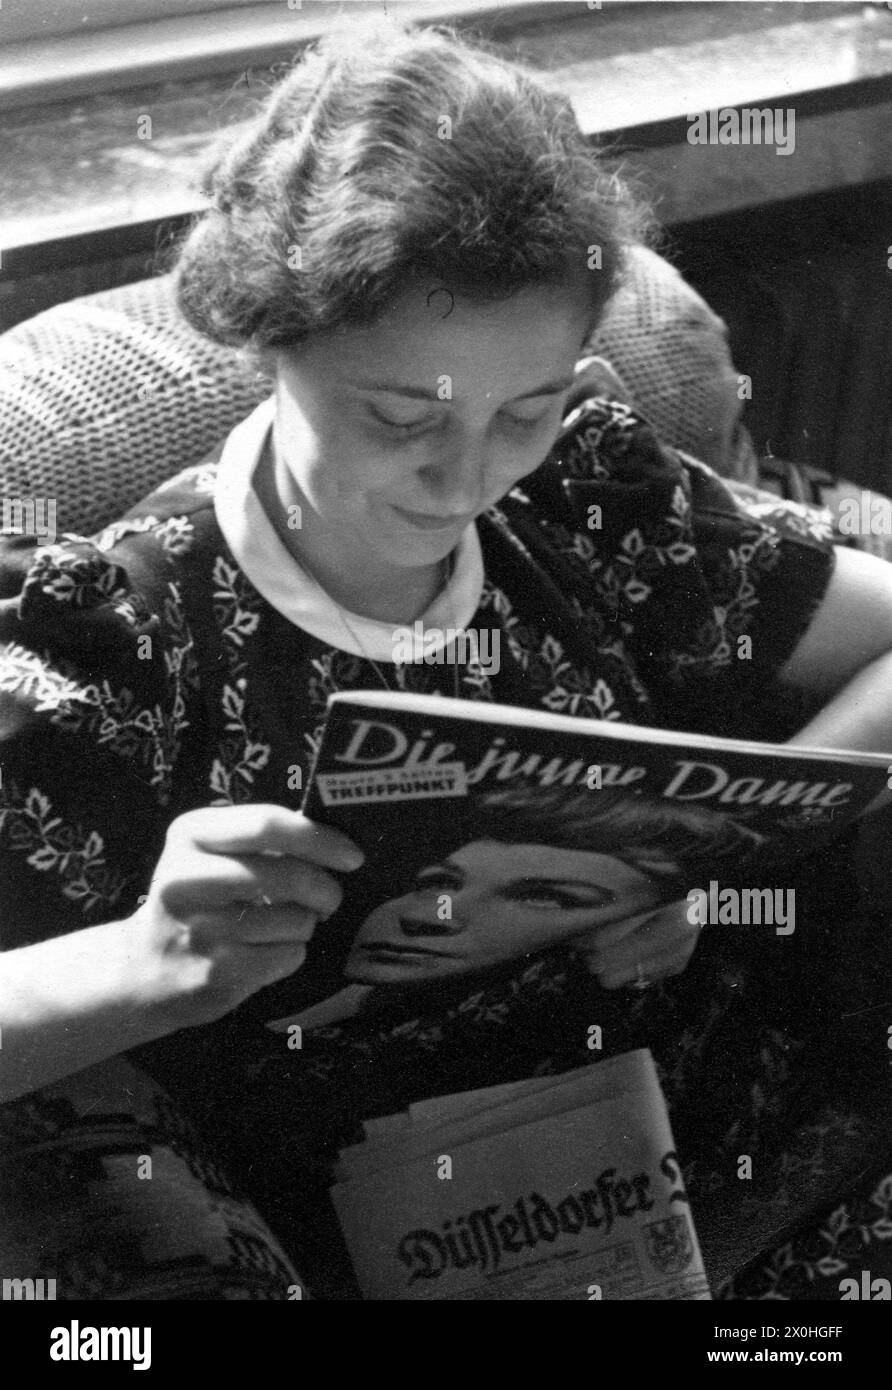 Eine junge Dame liest das "die junge Dame". Stockfoto